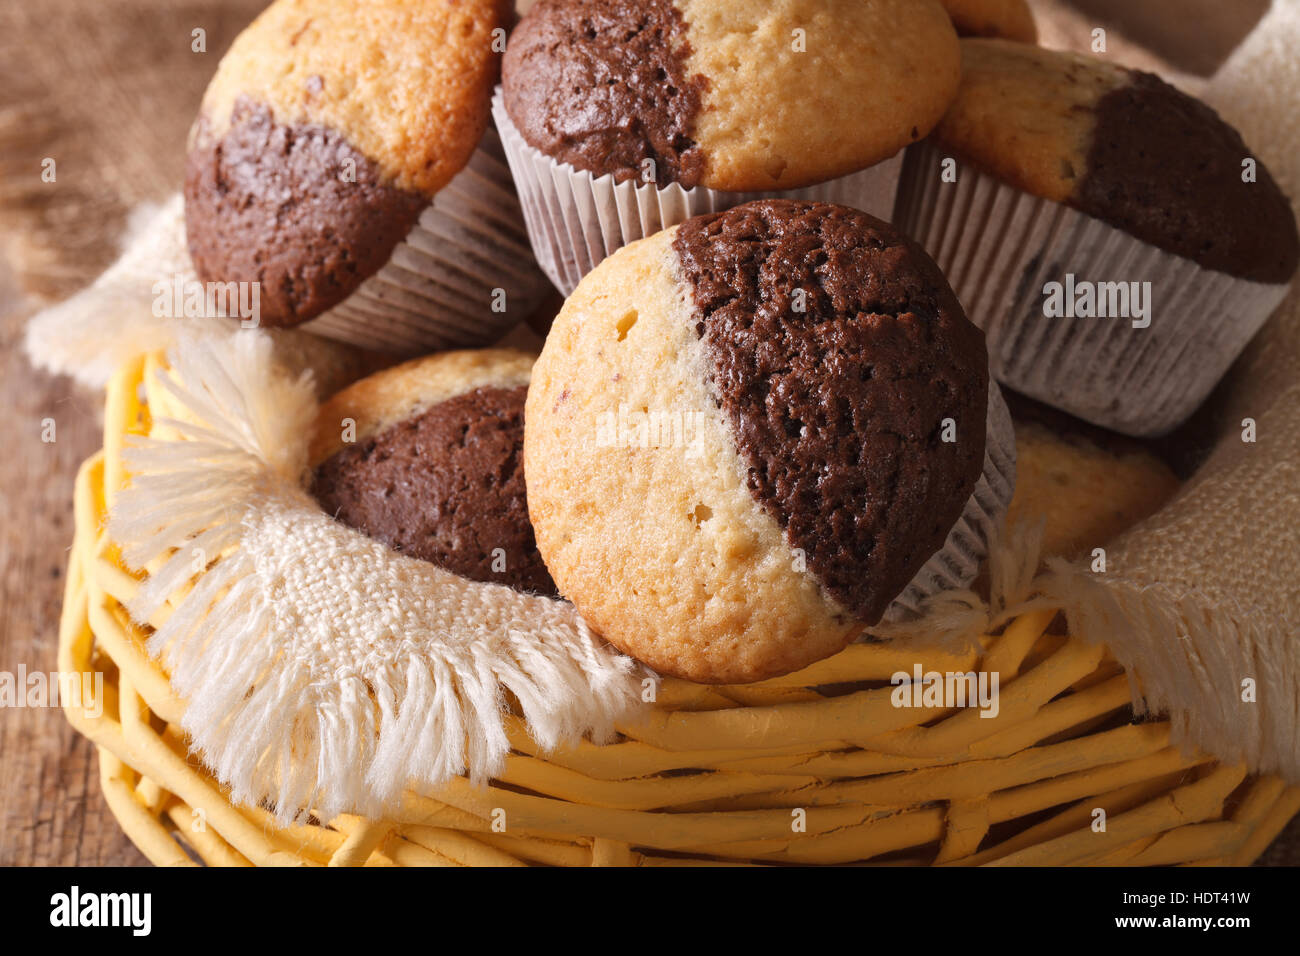 zweifarbige Muffins Orange und Schokolade close-up in einem Korb.  horizontale Stockfotografie - Alamy